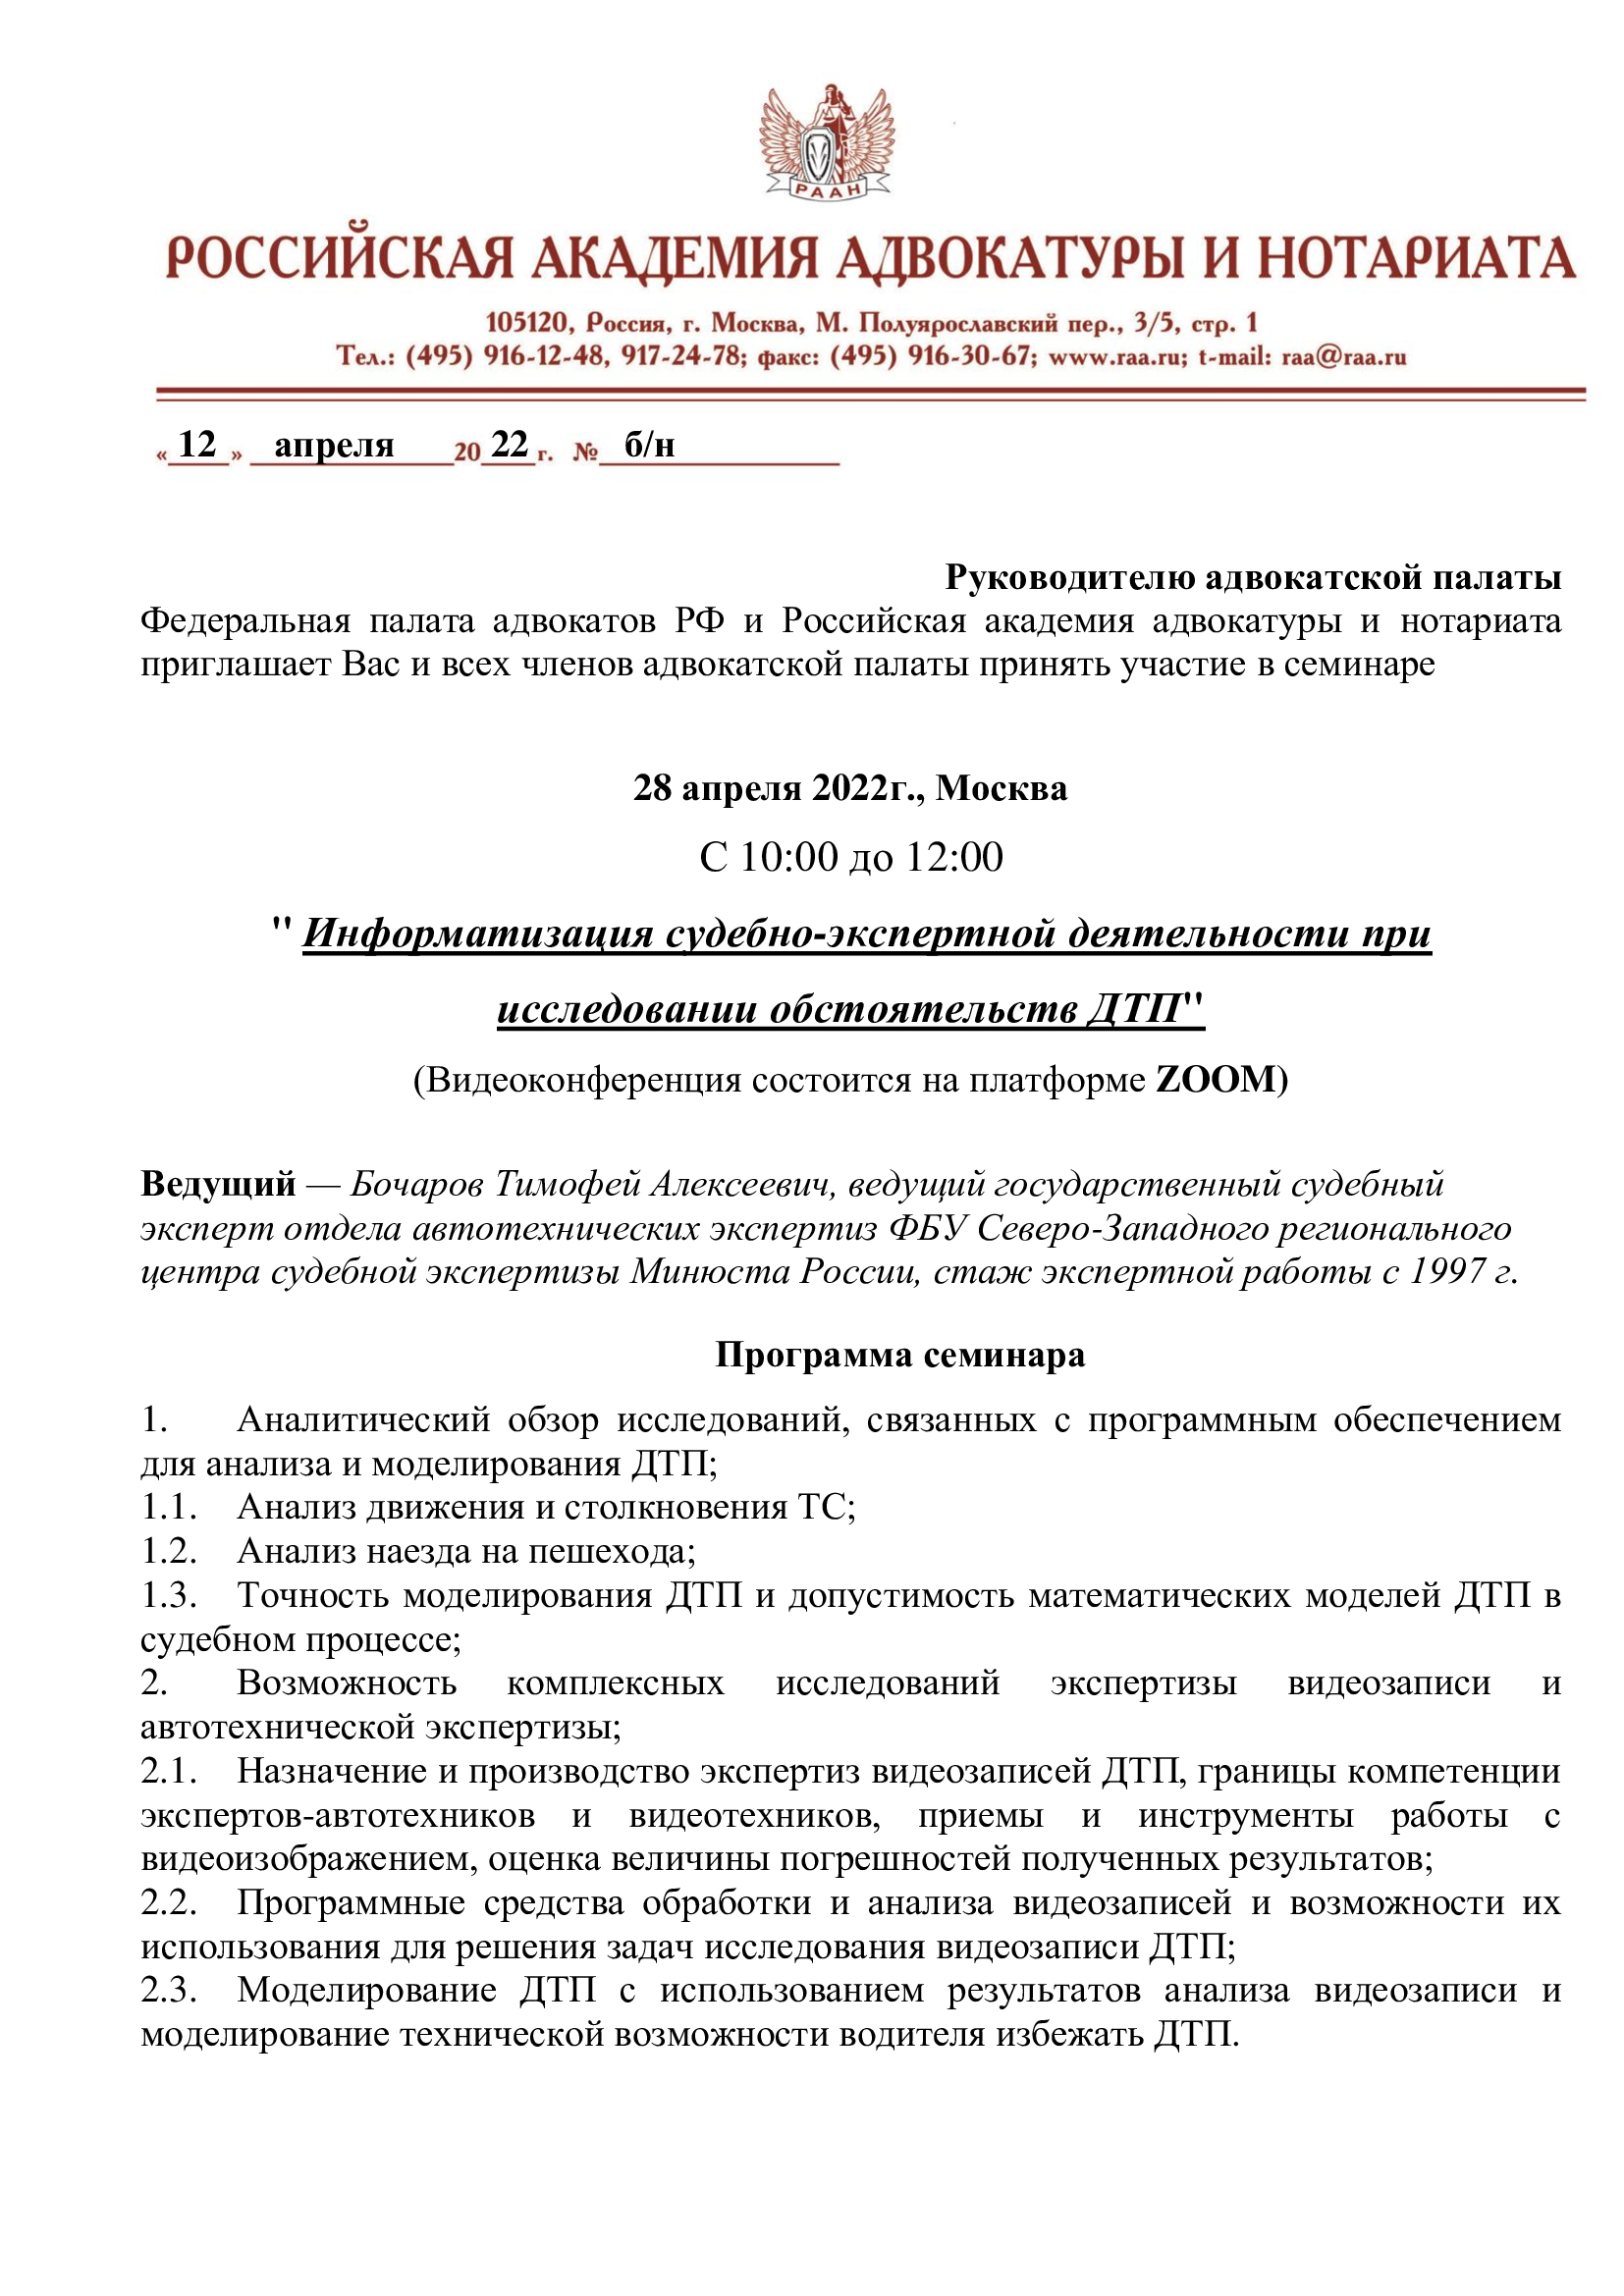 Курсы повышения квалификации адвокатов 28.04.2022 г.